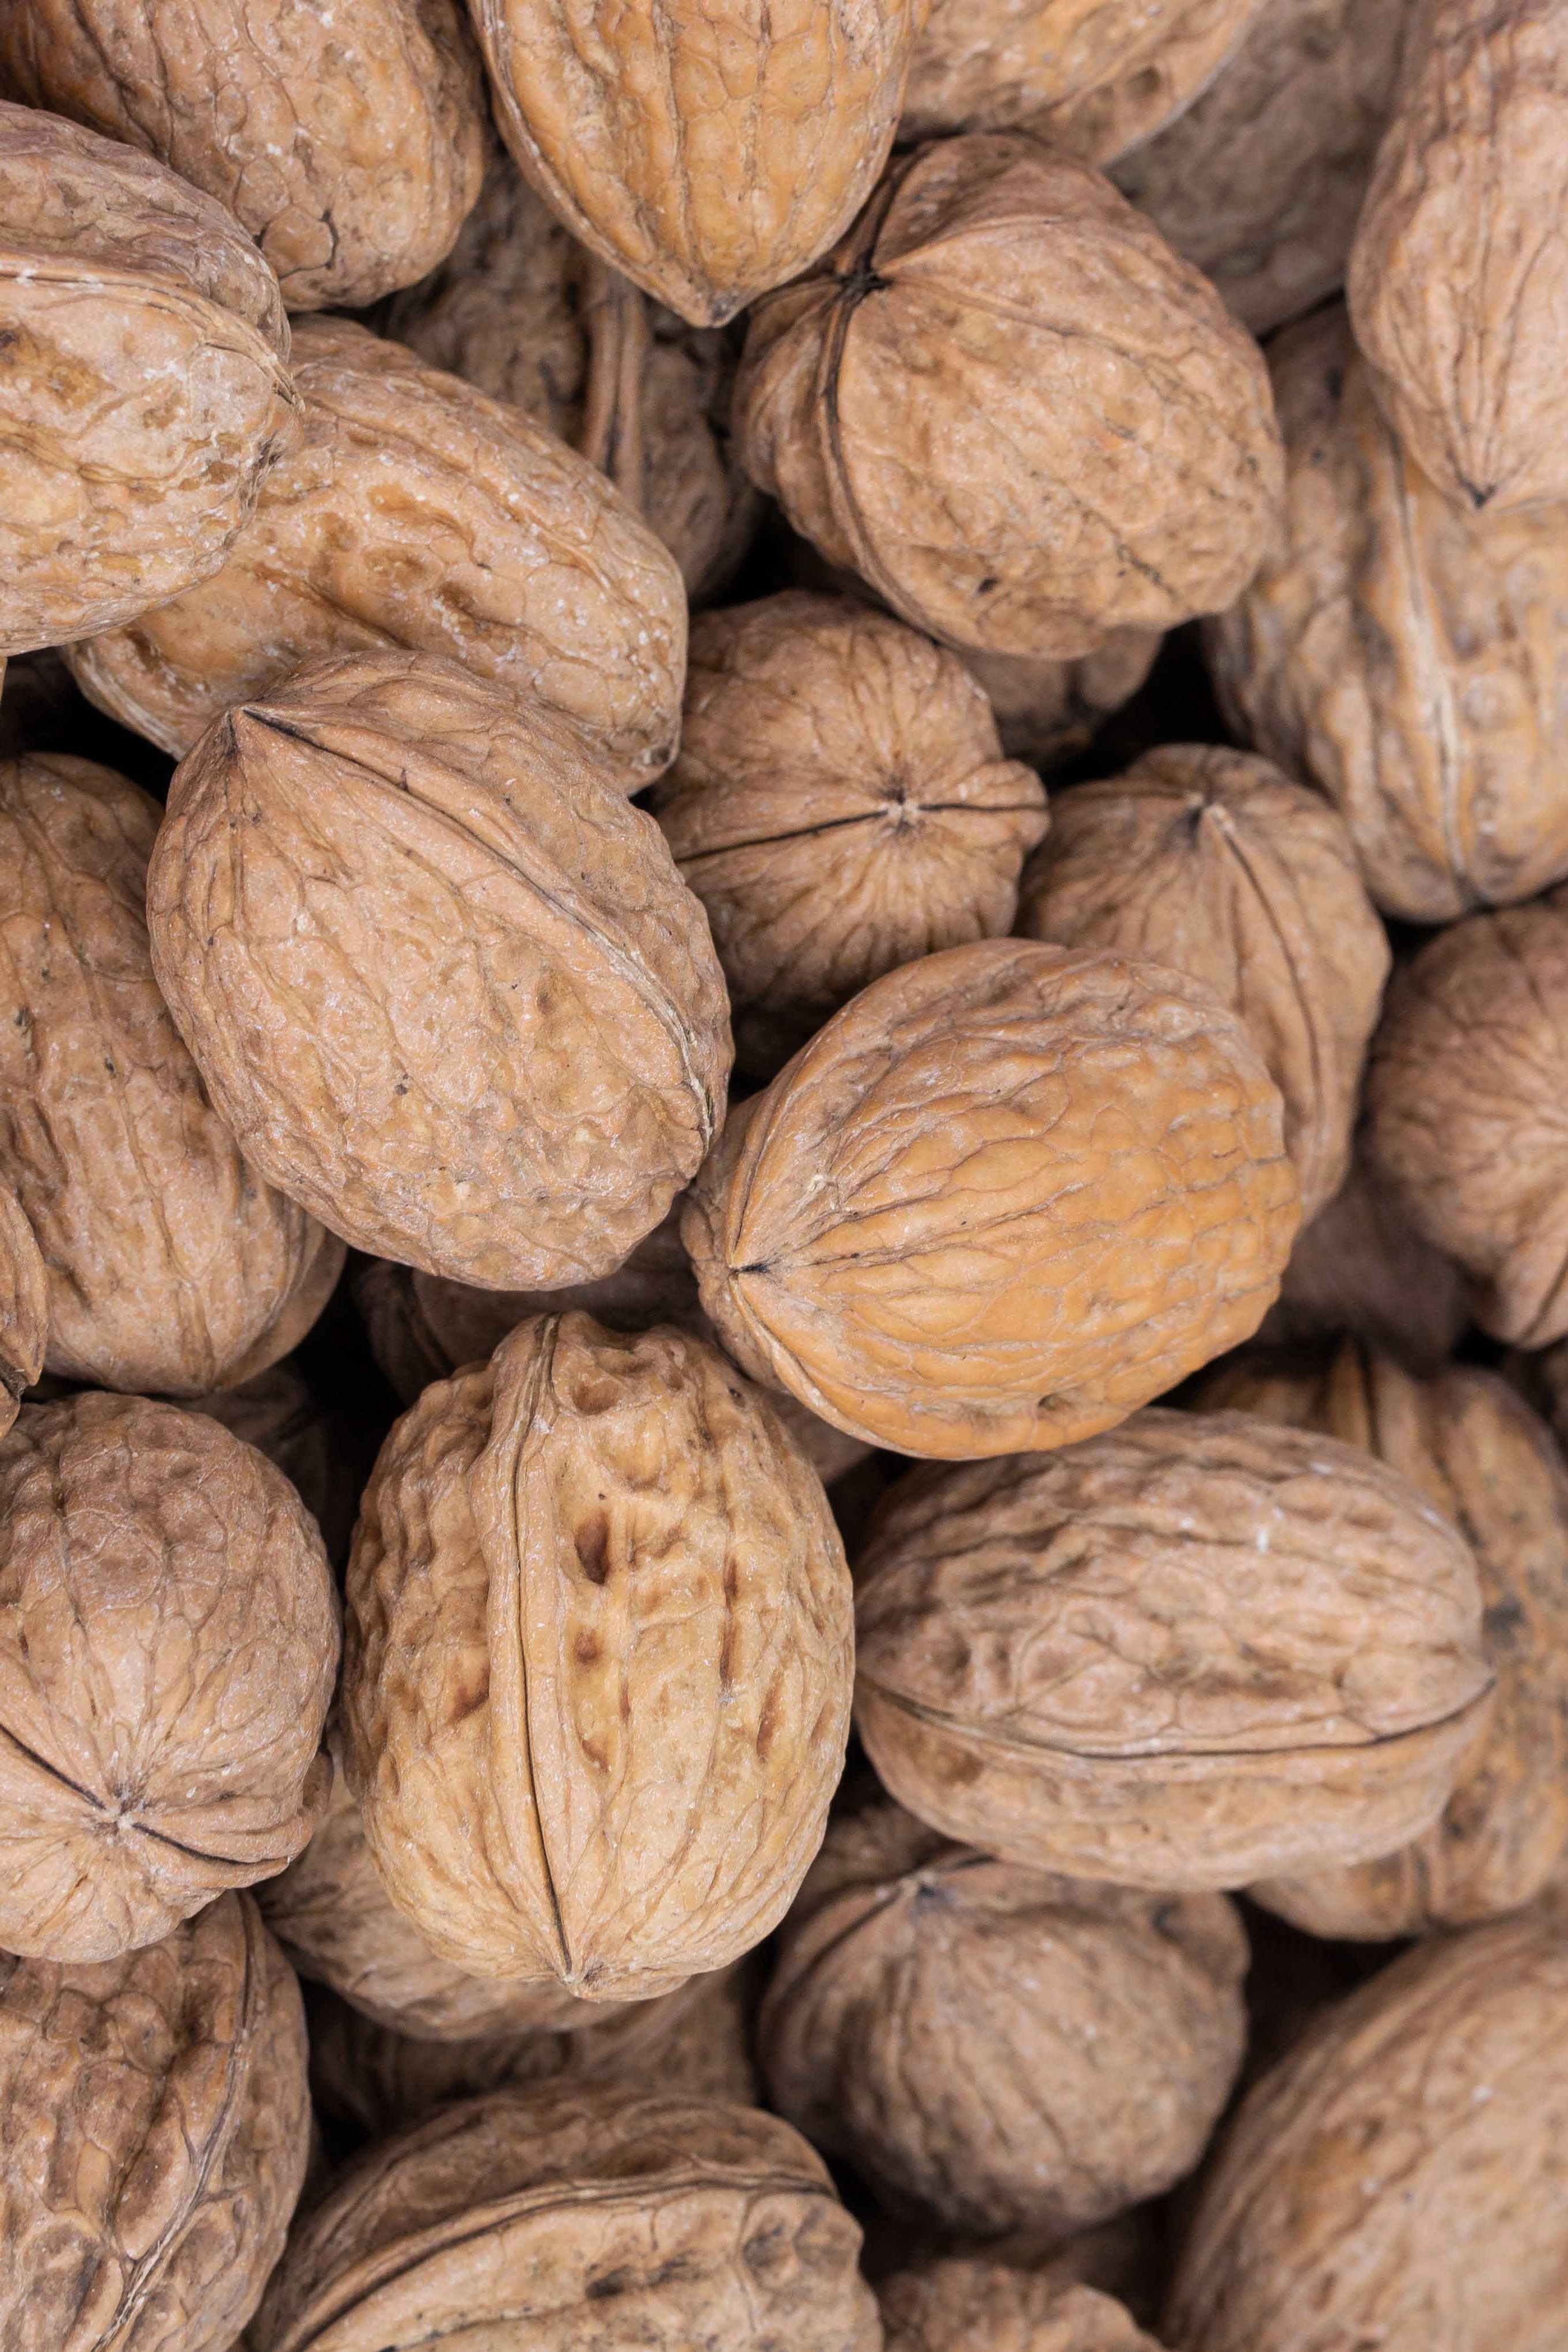 Organic walnuts in shell, France, assortment 32-34mm